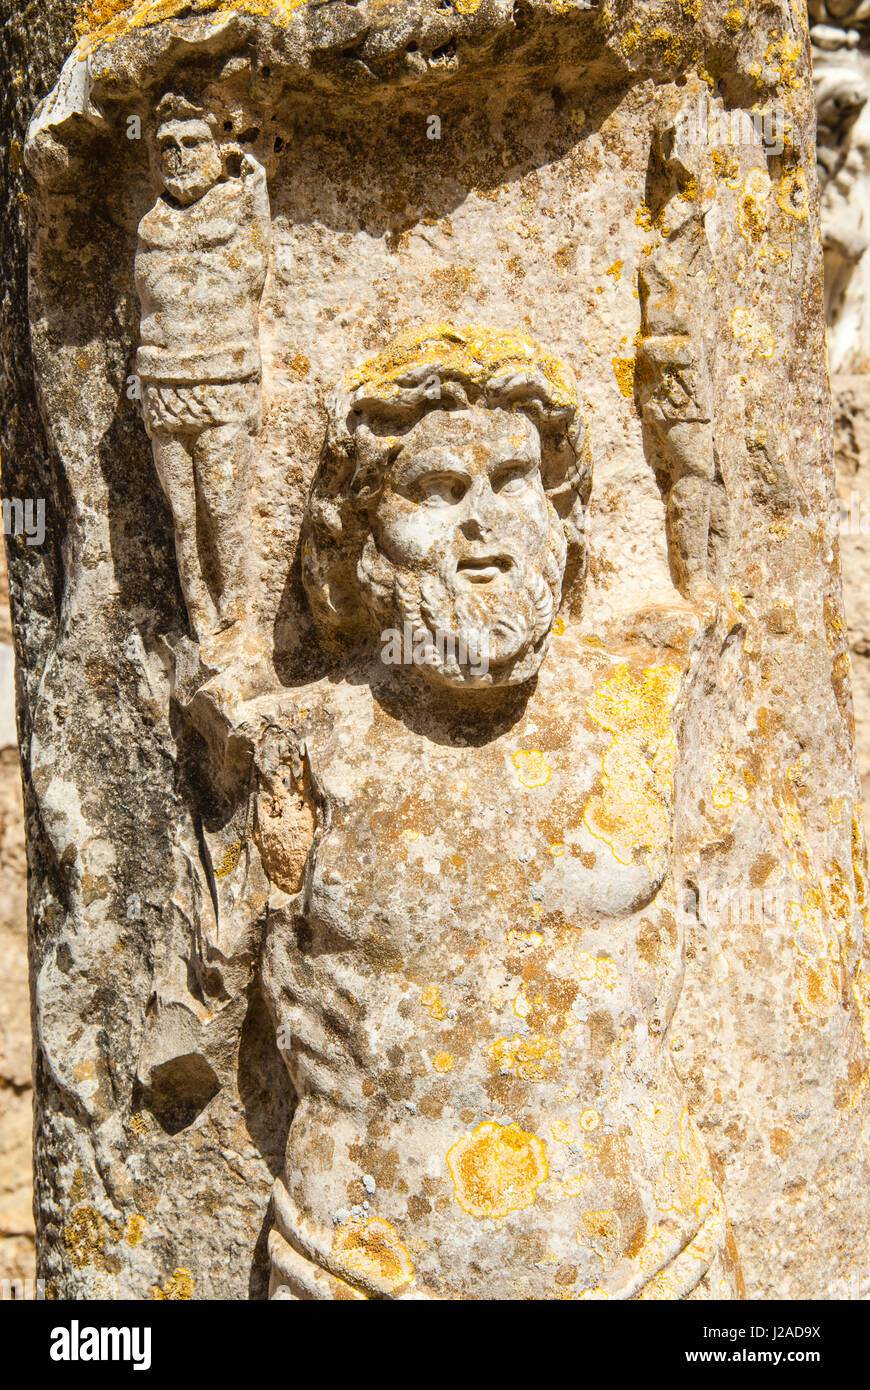 Römische Hochrelief, Byrsa-Hügel, Karthago Nationalmuseum, punischen Website von Karthago, UNESCO World Heritage Site, Tunesien, Nordafrika Stockfoto